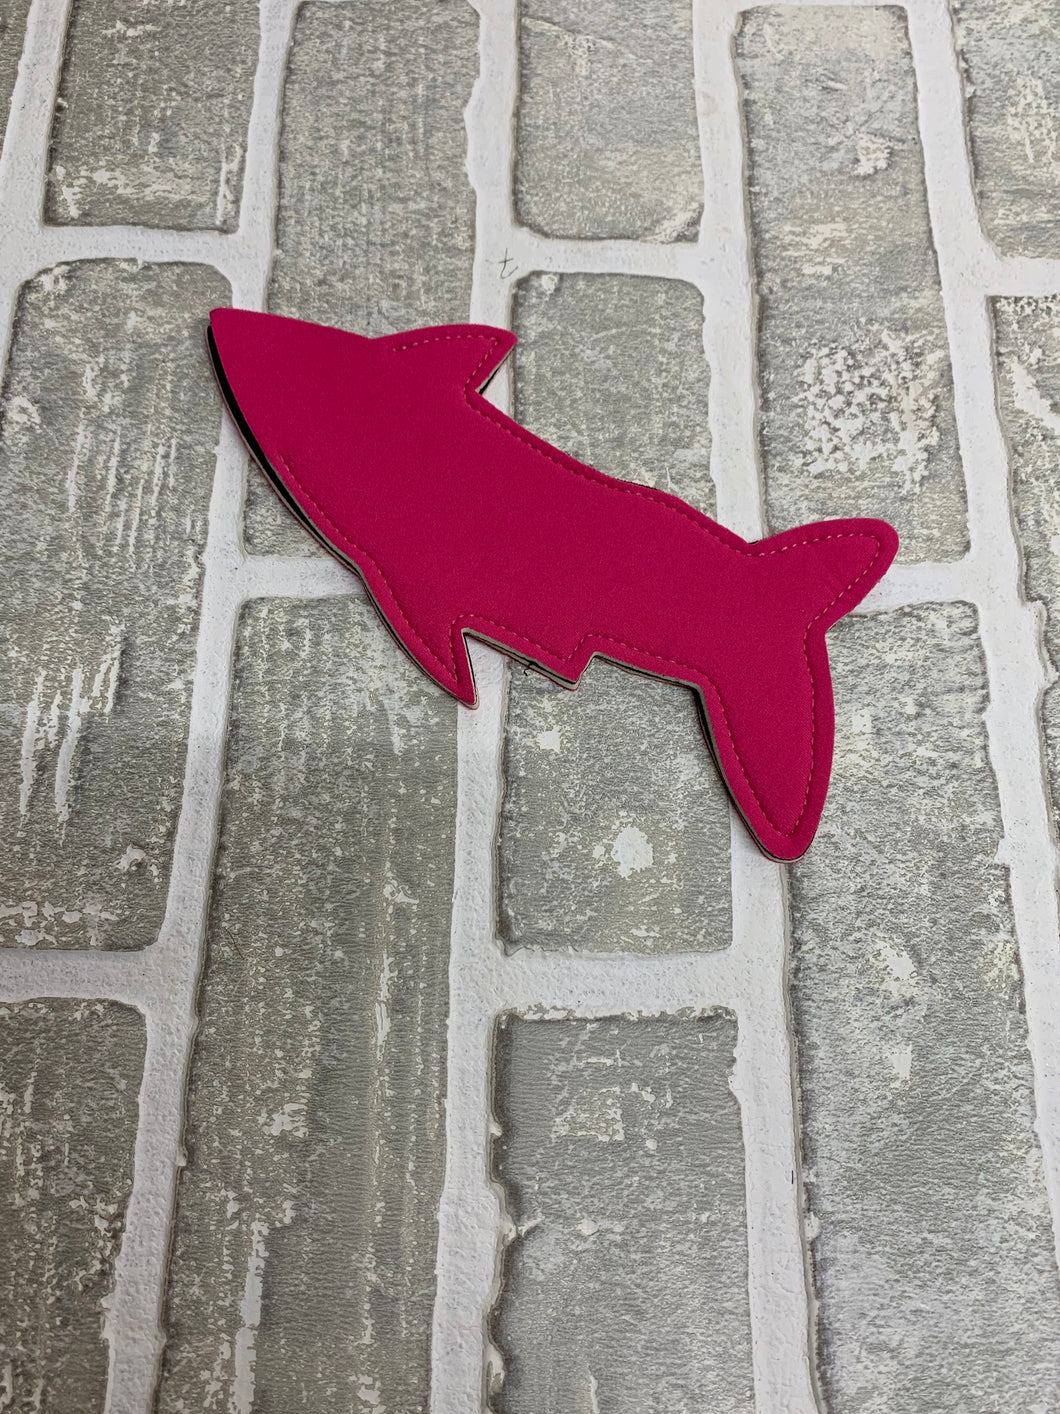 Shark popsicle holder blanks